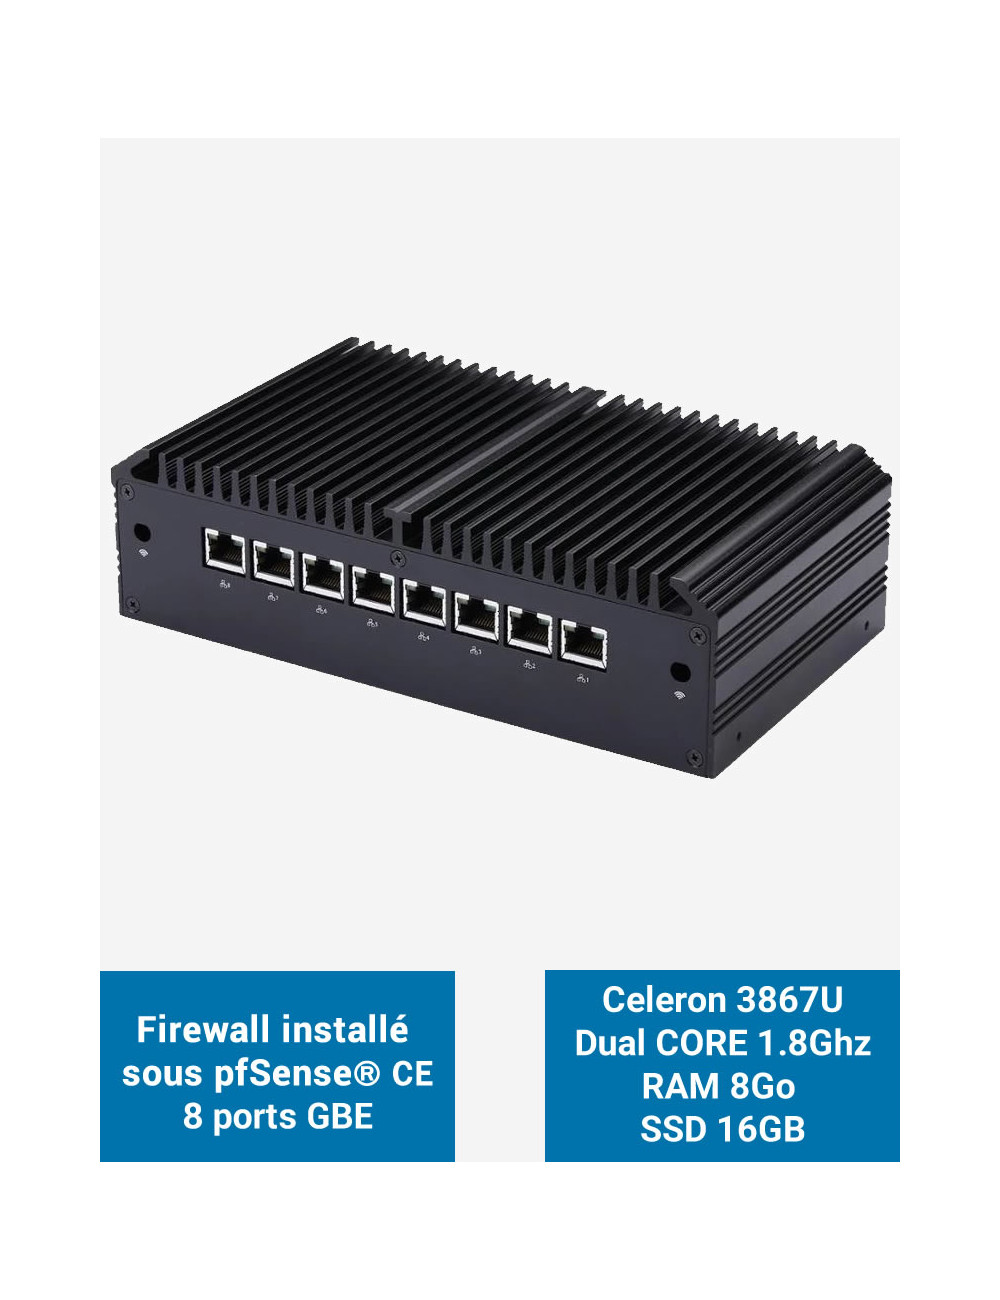 Firewall Q8x Celeron 3867U 8 ports GbE 8GB 16GB